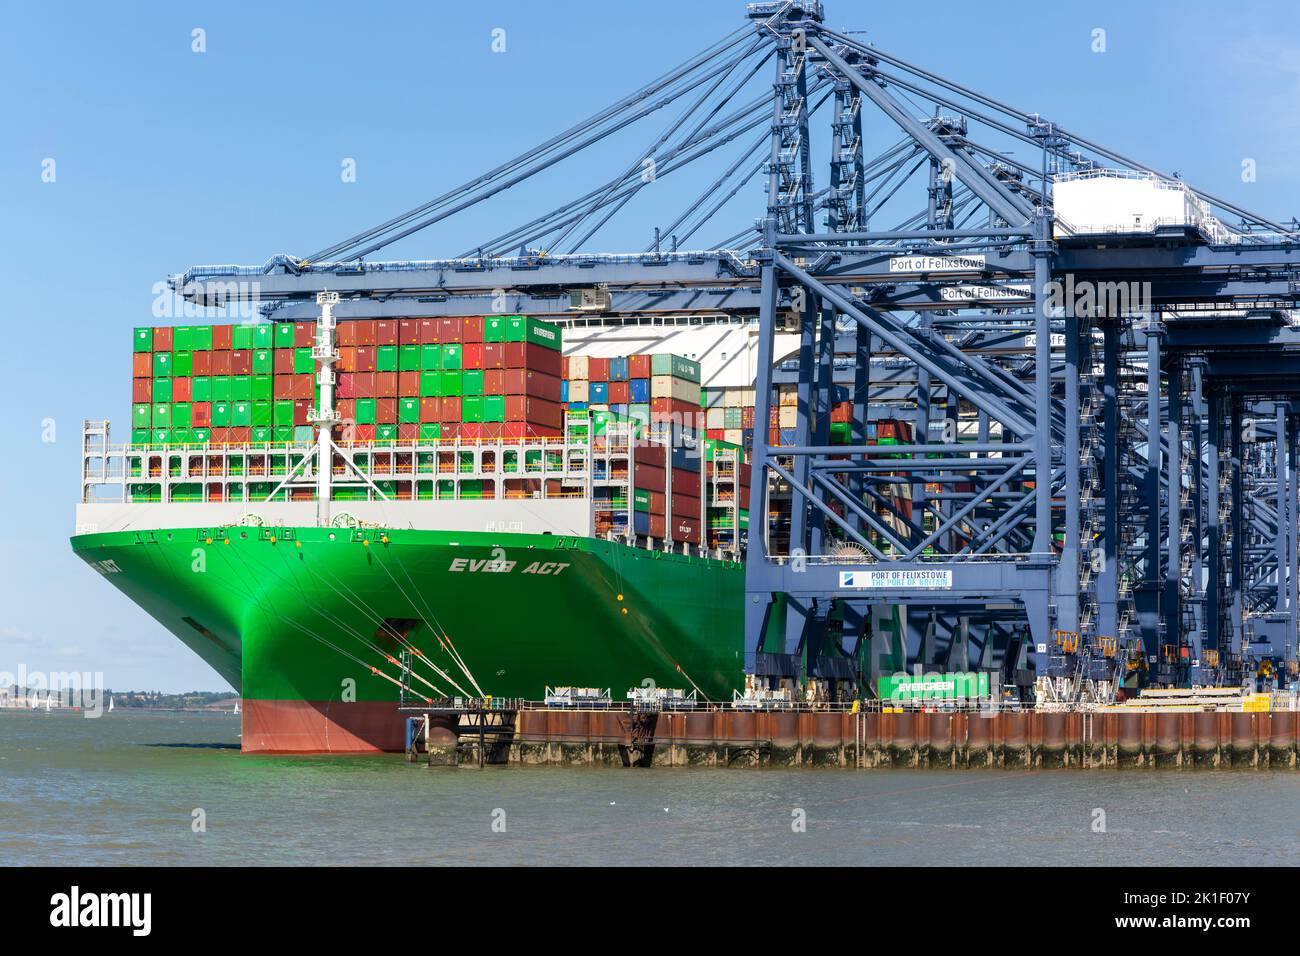 Evergreen Ever Act navire à conteneurs et grues portiques sur quai, Port de Felixstowe, Suffolk, Angleterre, Royaume-Uni Banque D'Images